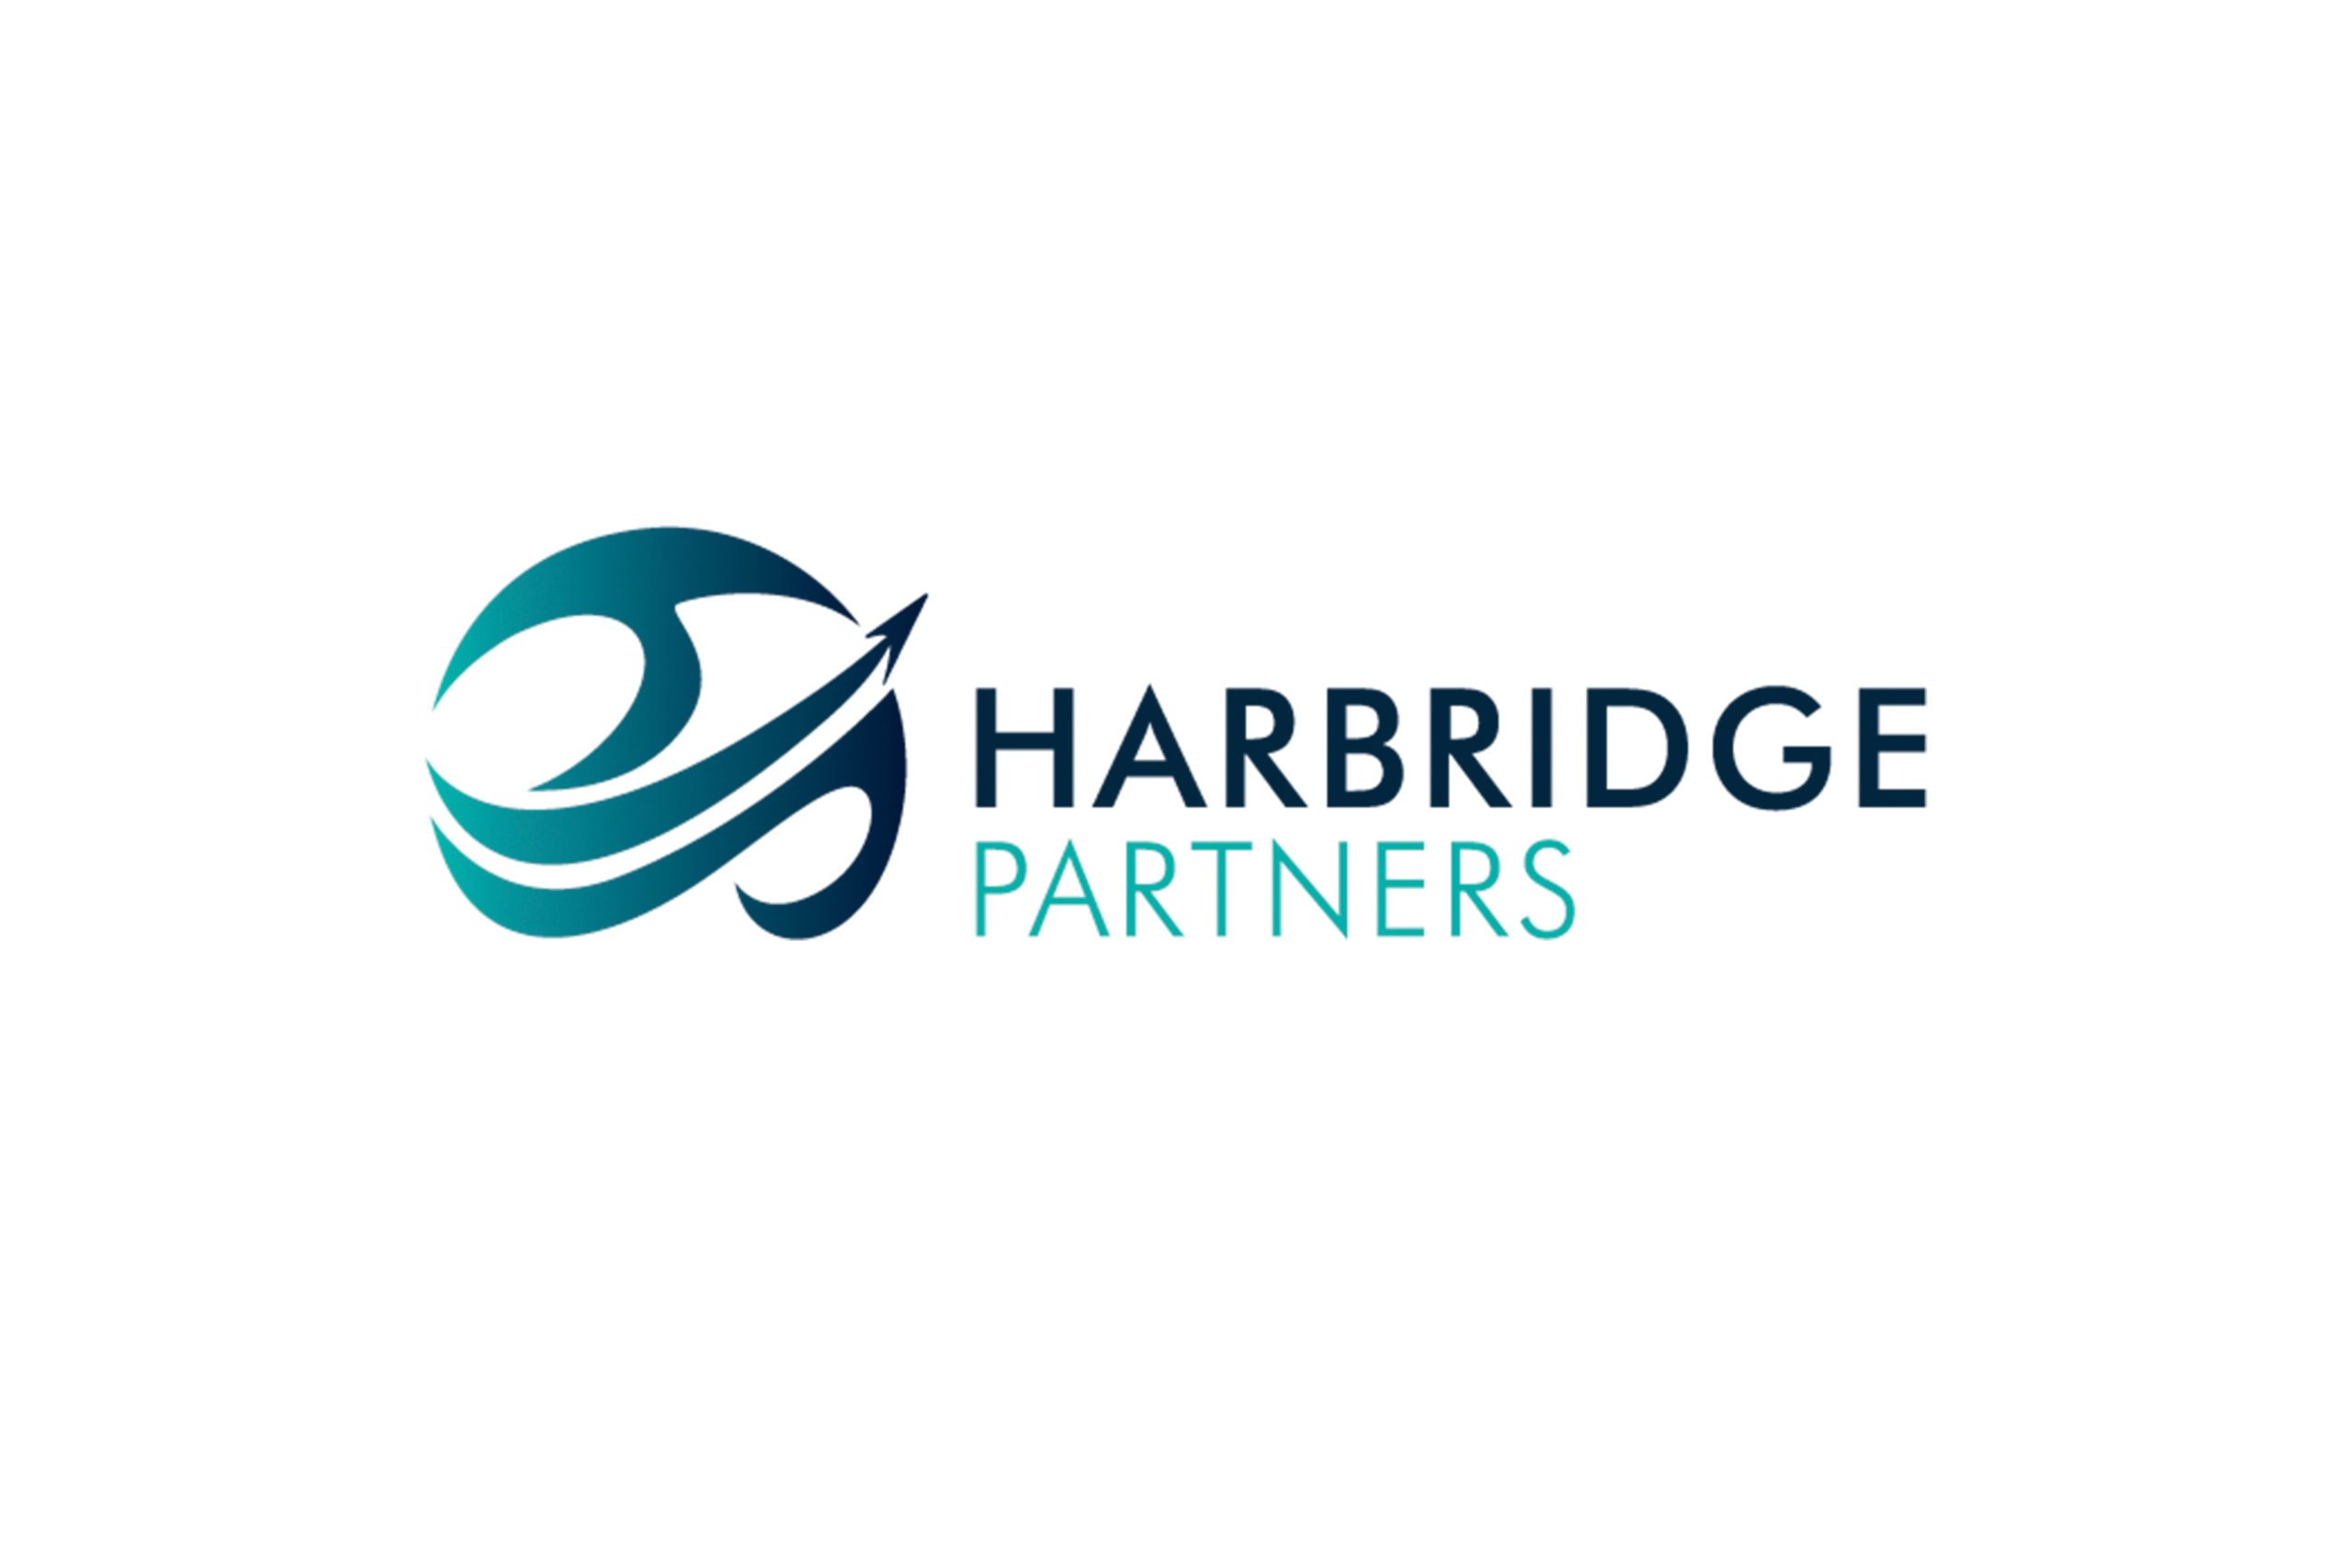 ipulse design web branding harbridge full logo